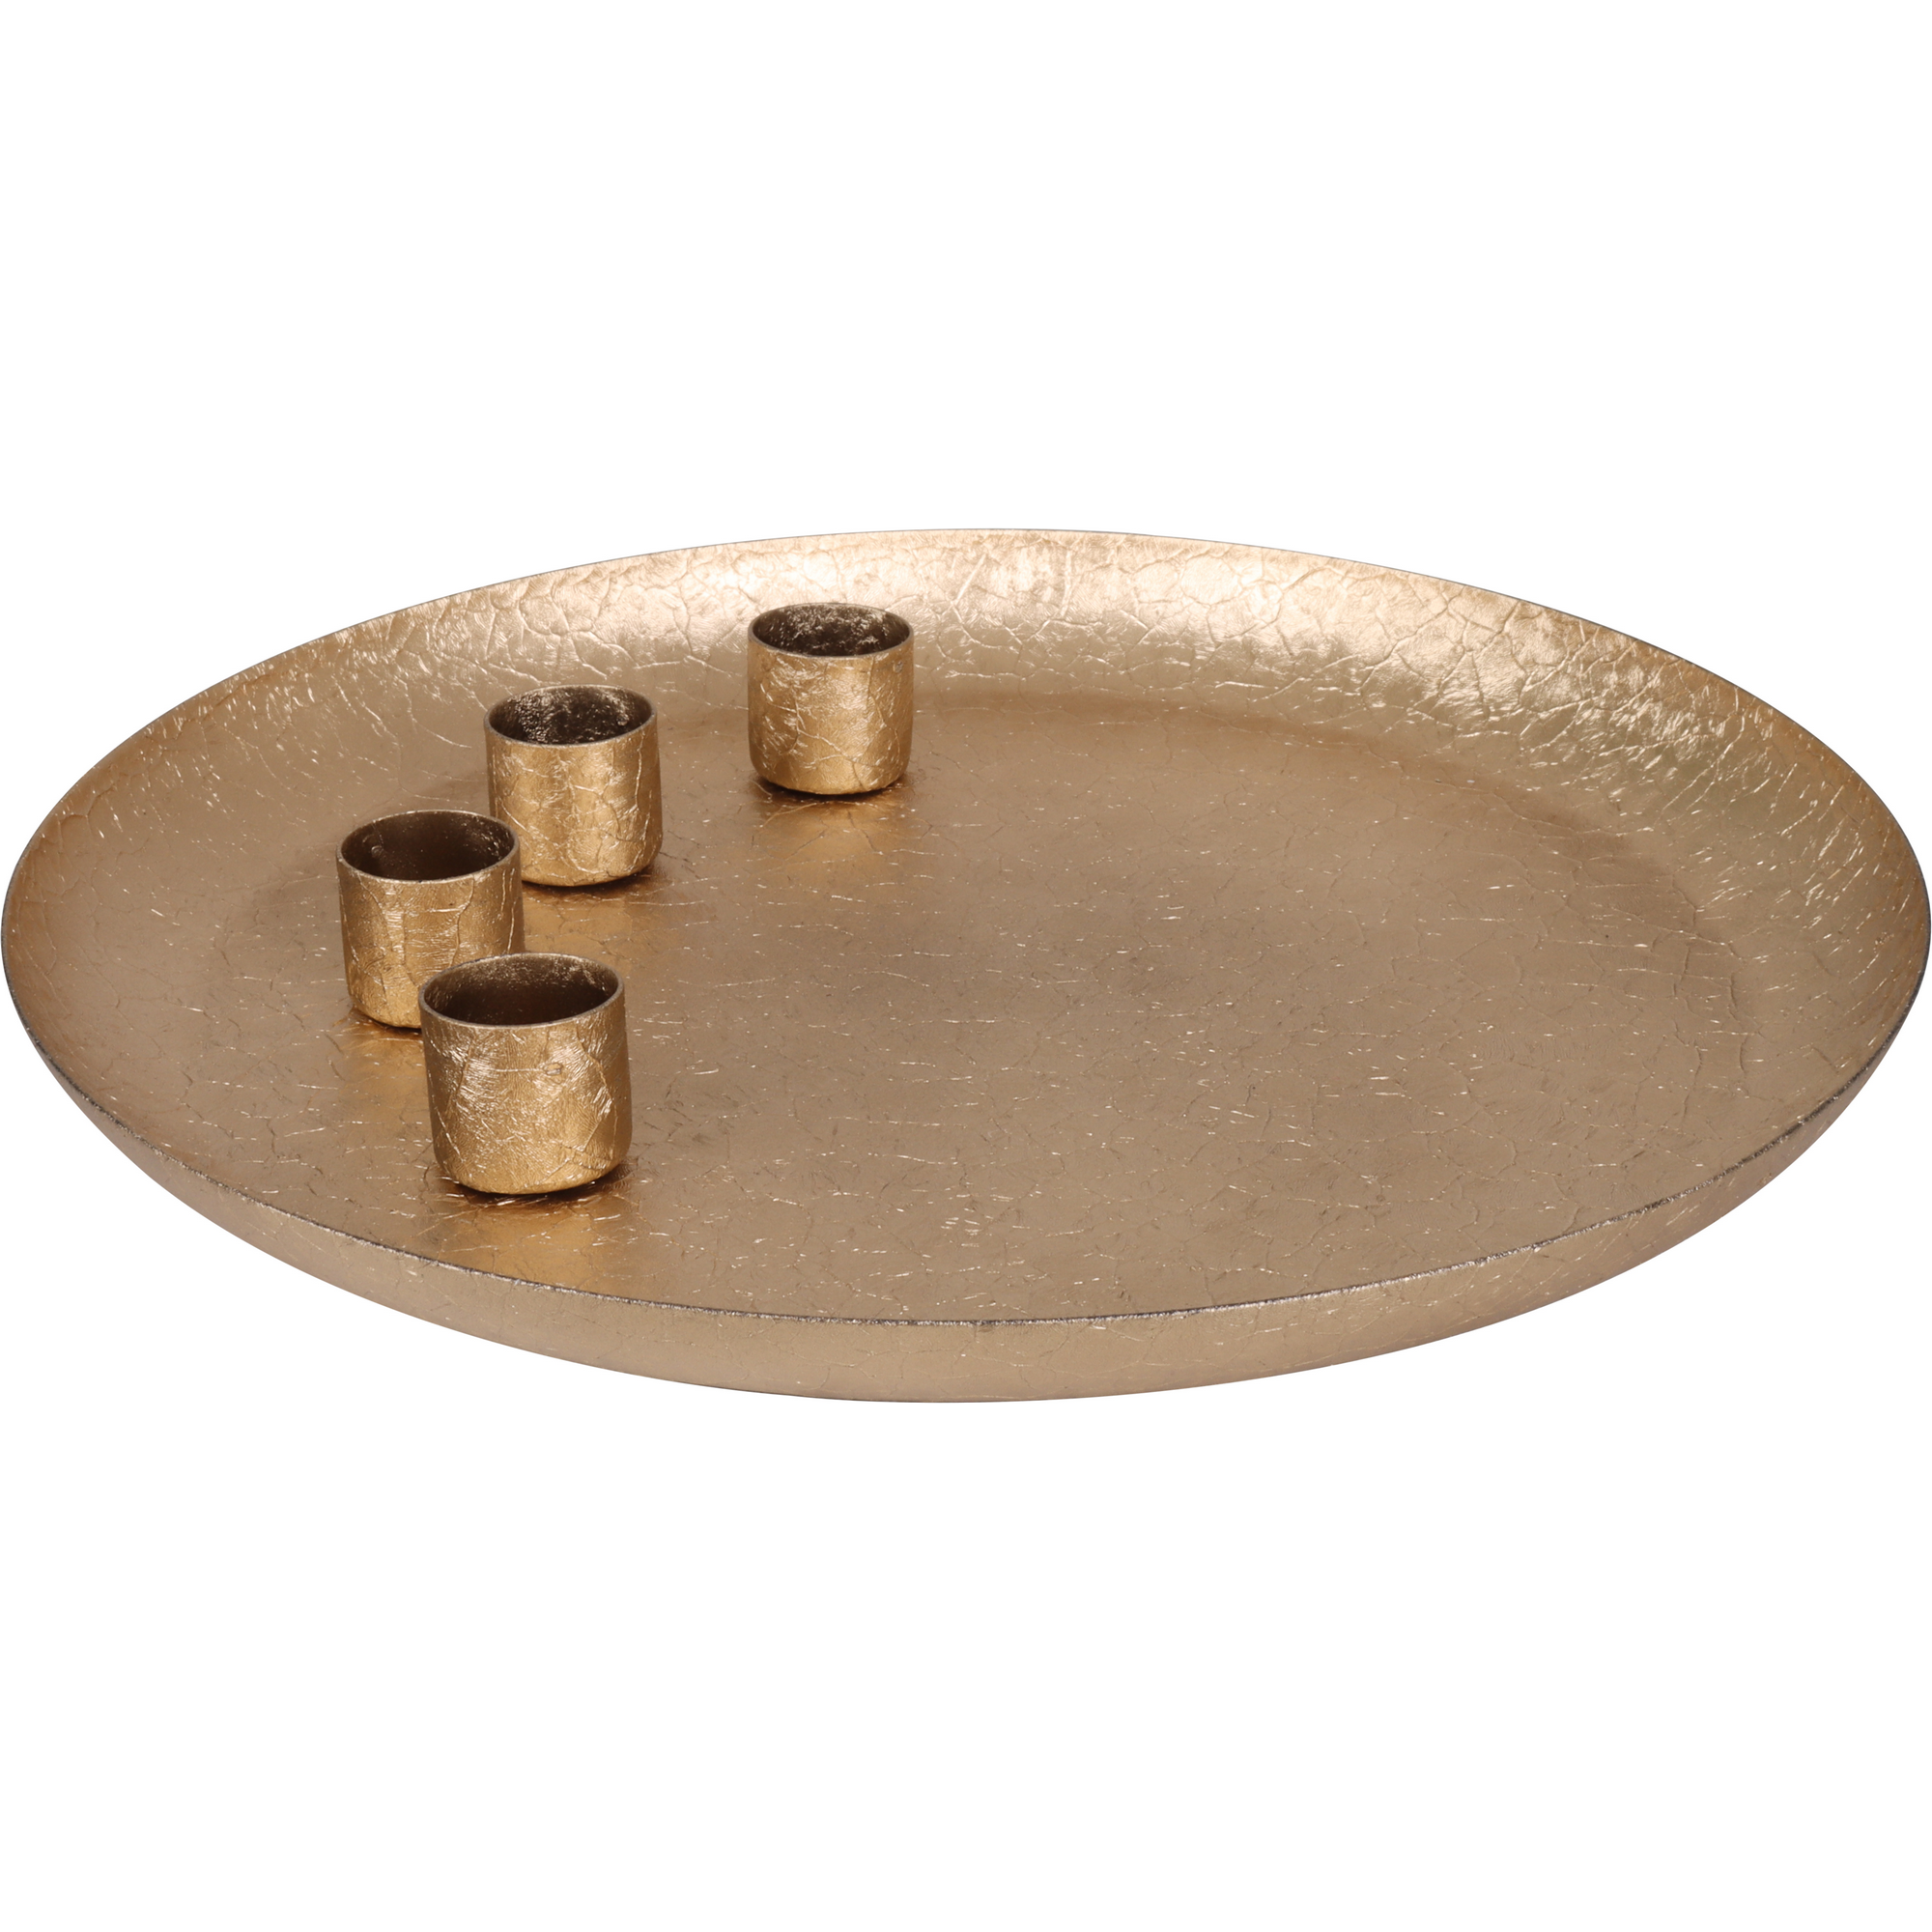 Adventsteller mit 4 magnetischen Kerzenhaltern lackiert goldfarben Metall Ø 25 x 3 cm + product picture